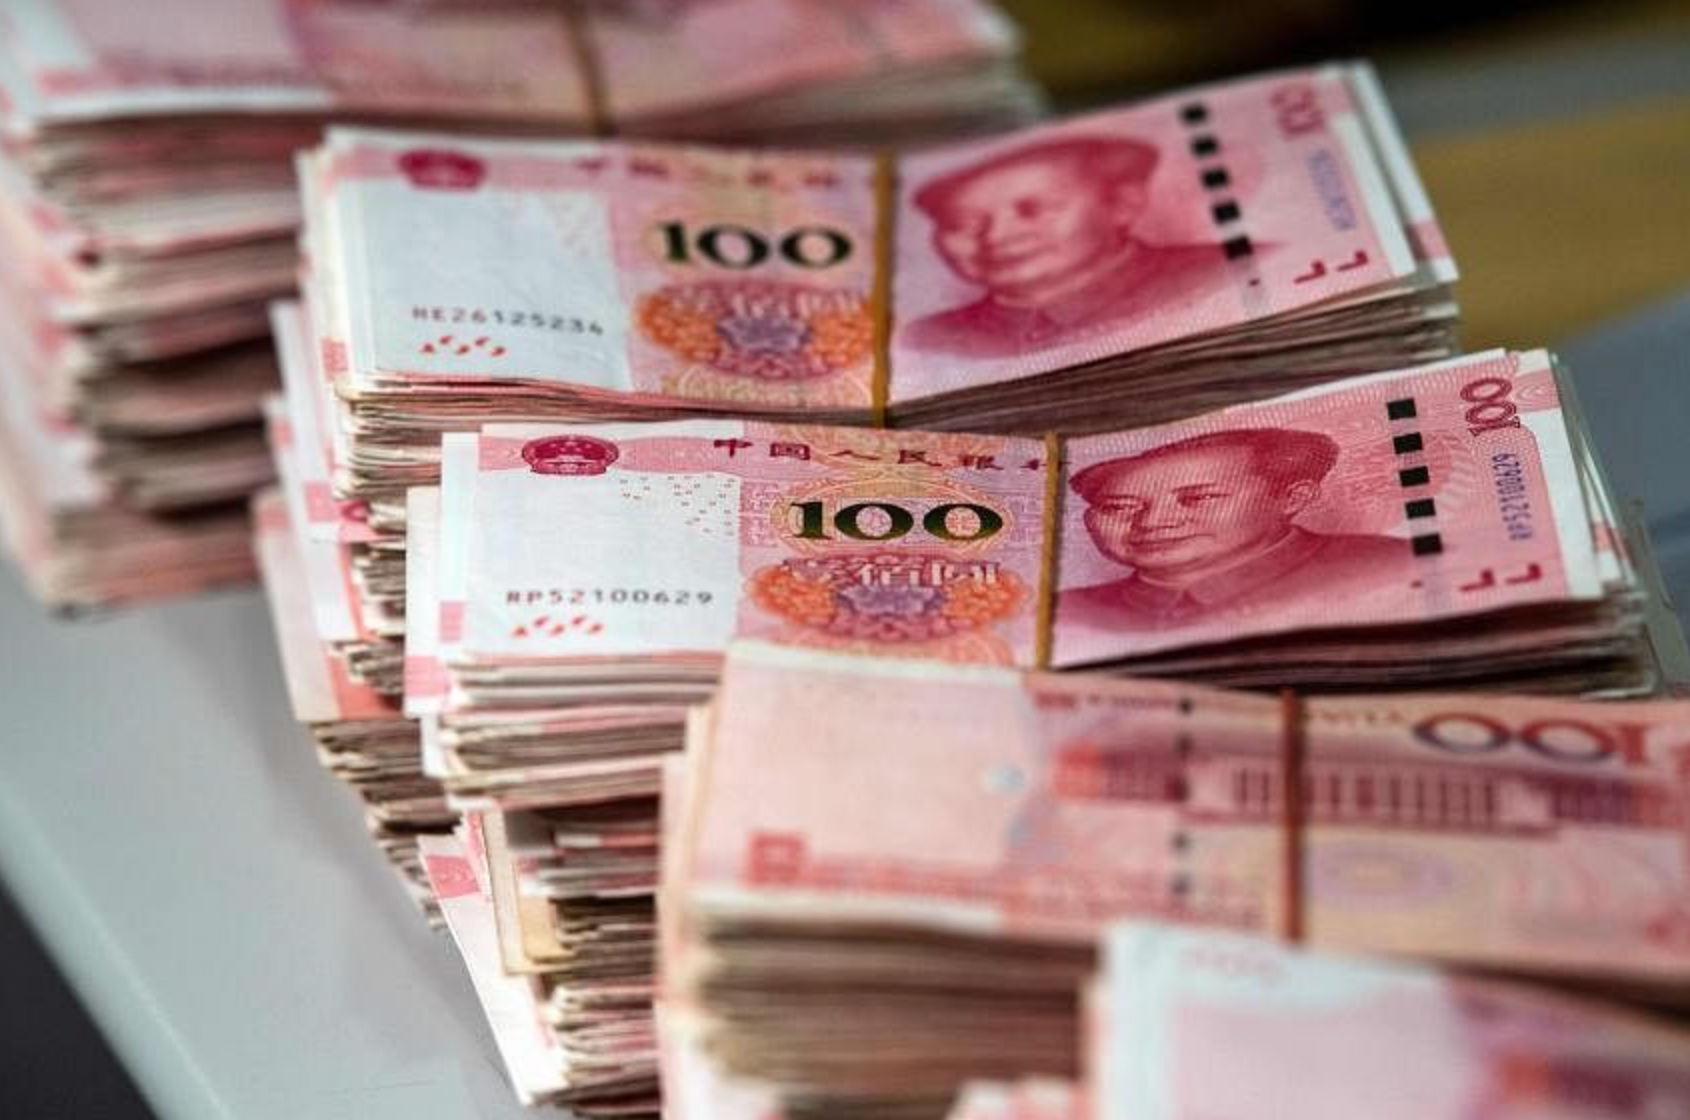 Trung Quốc: 'Chìm' trong những khoản vay giá rẻ, người dân Trung Quốc vẫn không chi tiêu, chỉ đổ tiền vào cổ phiếu và 'tranh thủ' trả nợ mua nhà - Ảnh 1.